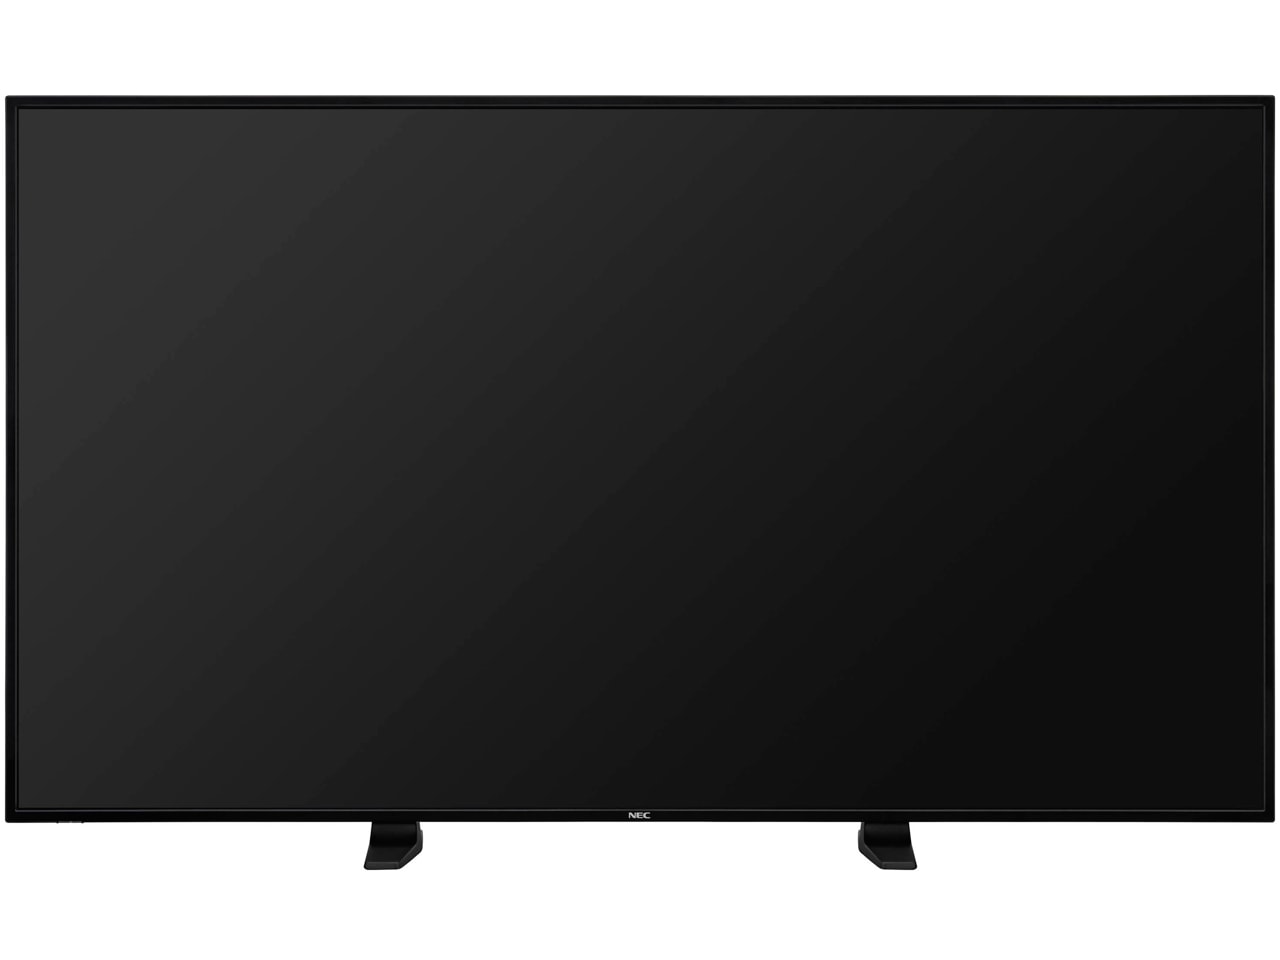  液晶テレビ LCD-E656